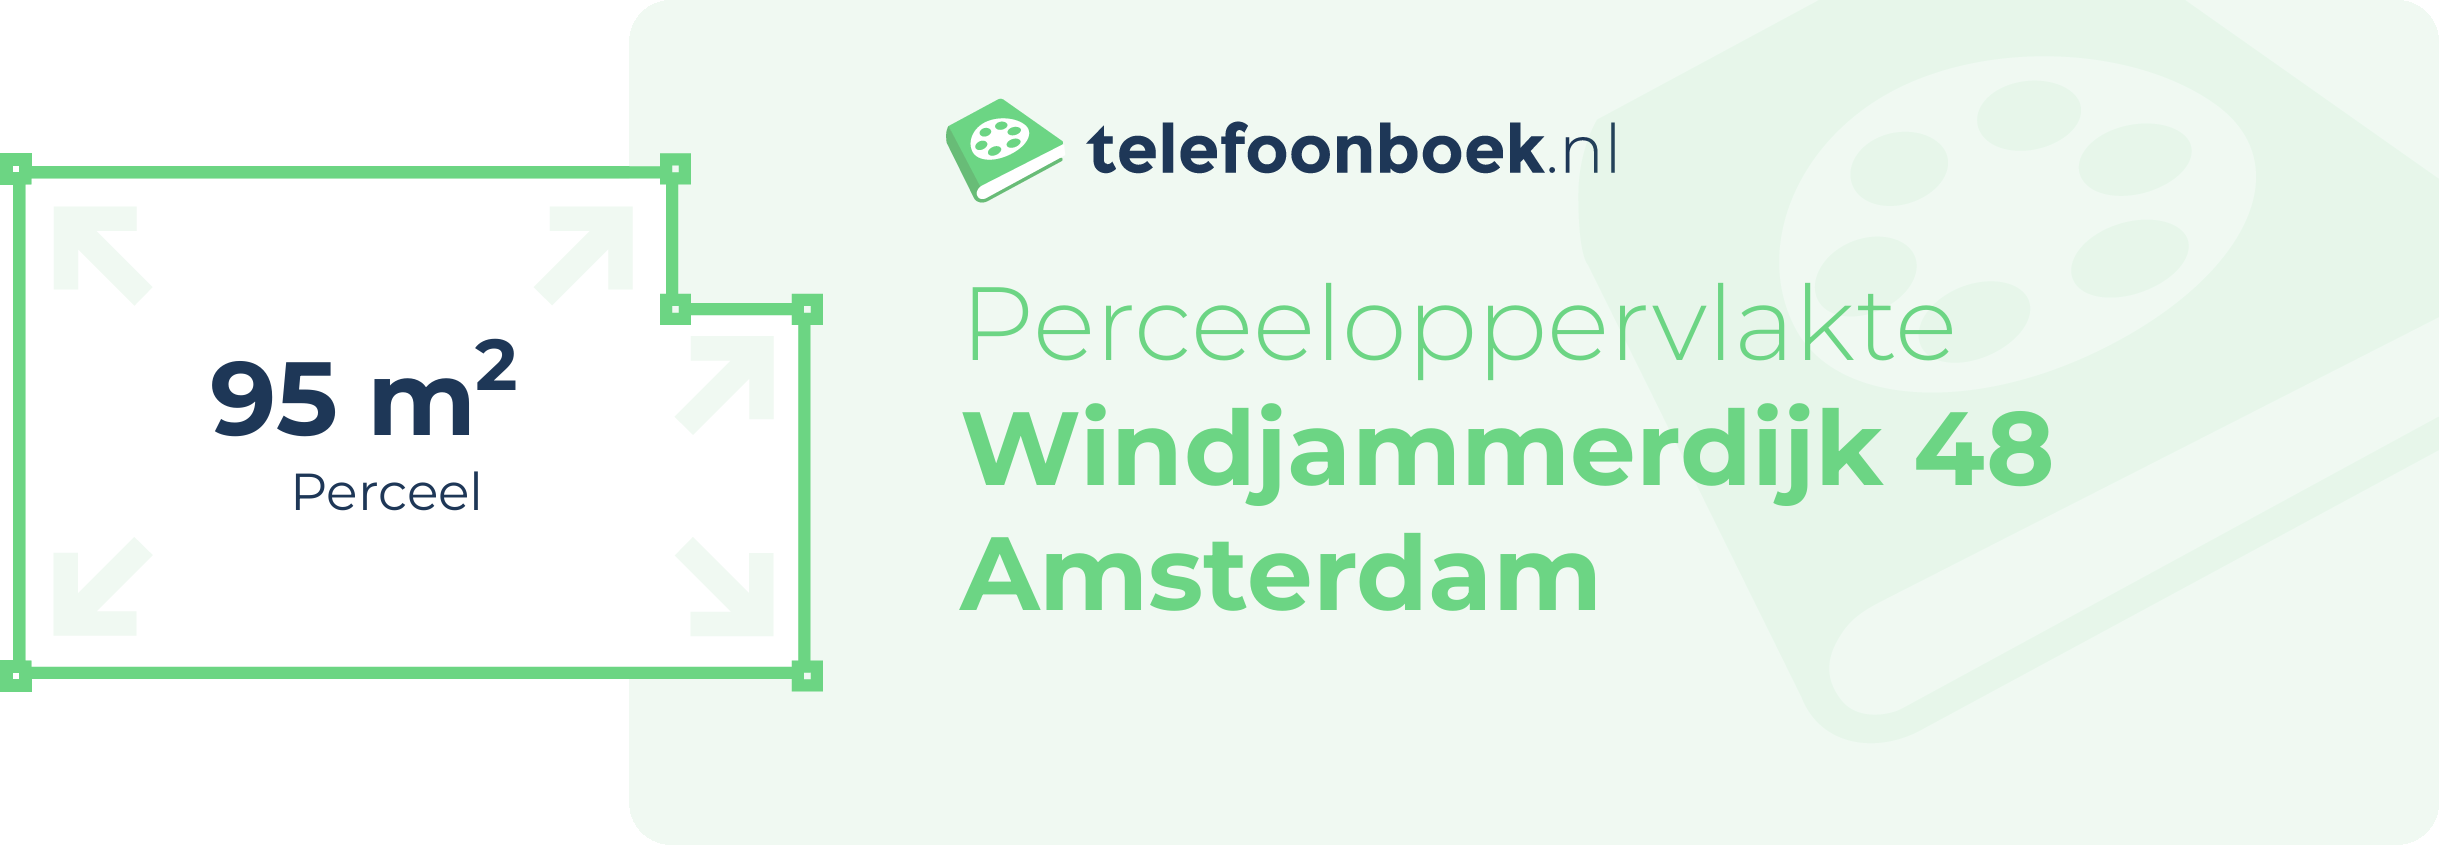 Perceeloppervlakte Windjammerdijk 48 Amsterdam